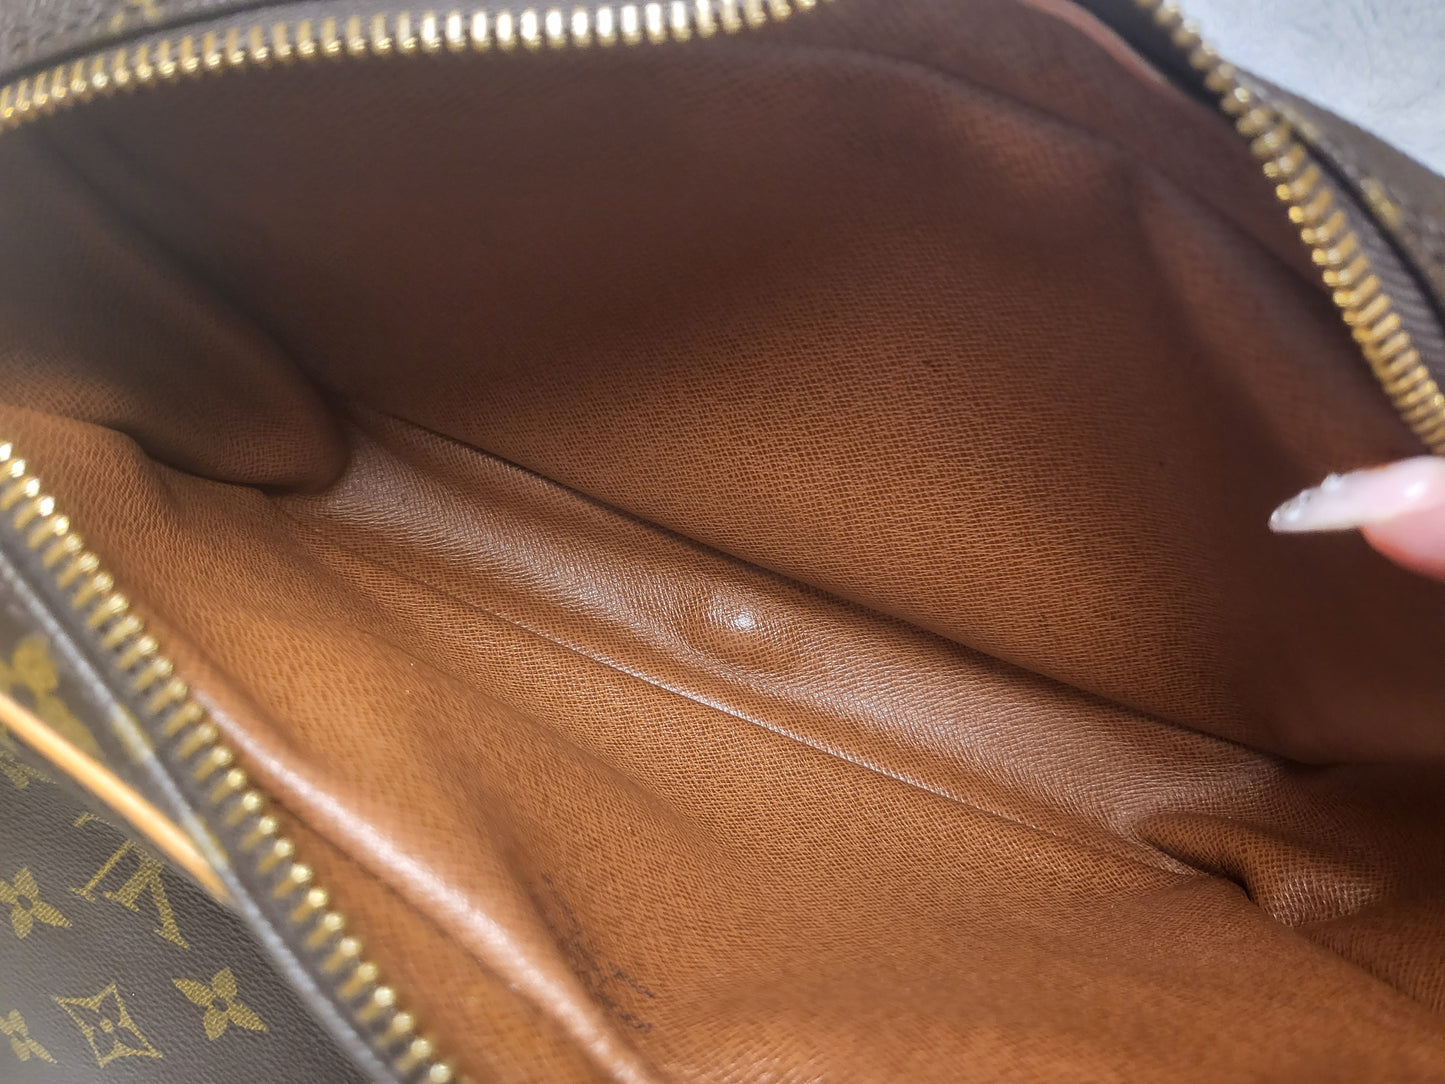 Authentic pre-owned Louis Vuitton Saint Germain crossbody shoulder bag